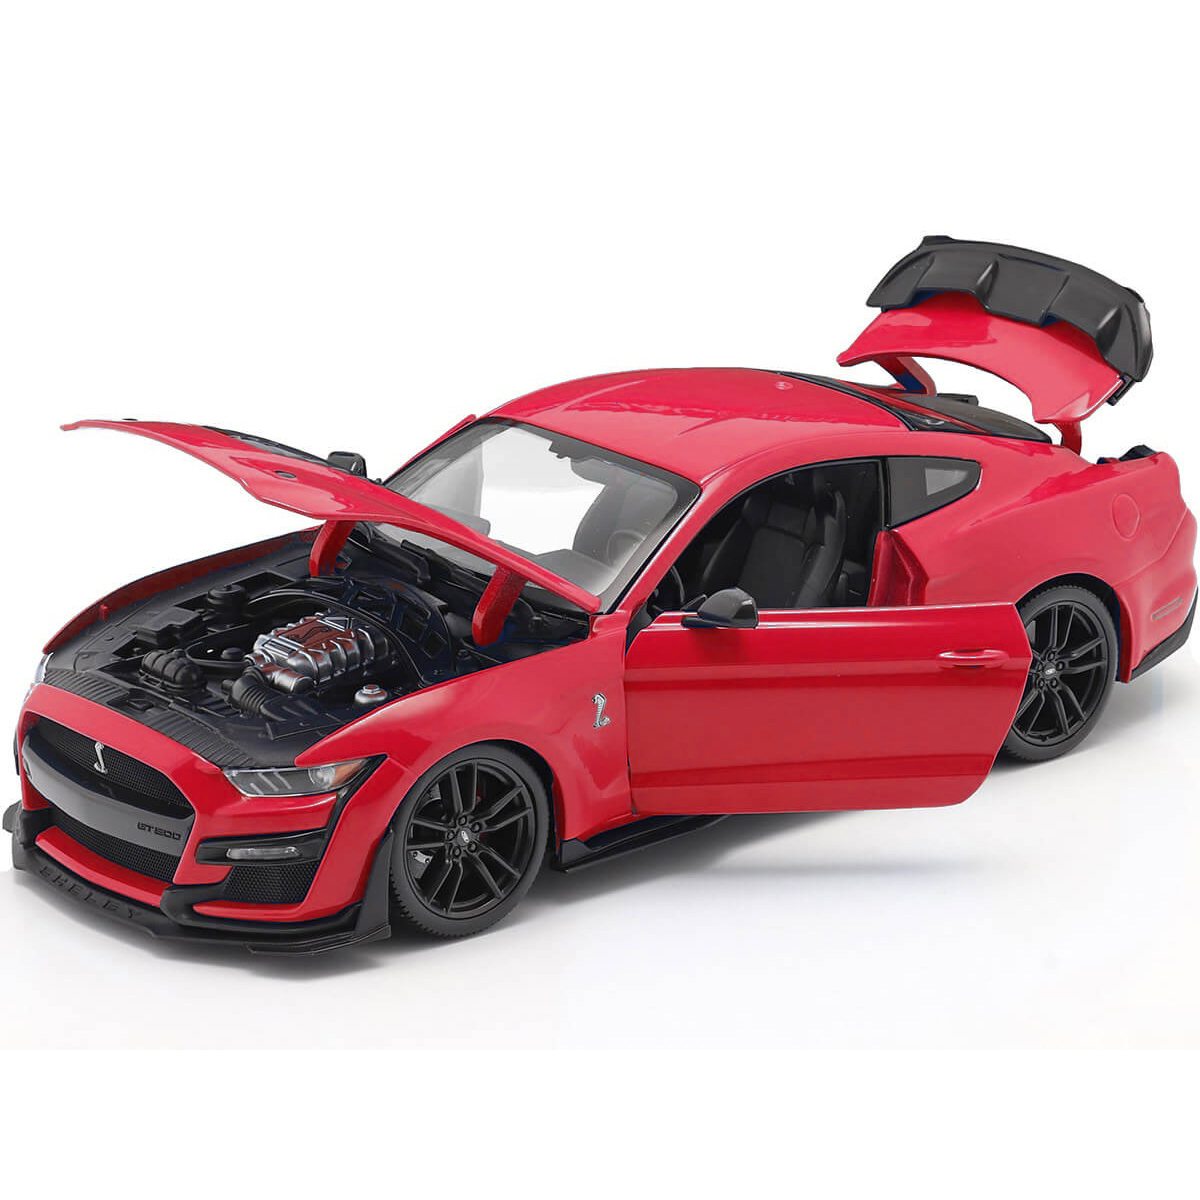 2020 Mustang Shelby GT500 - Escala 1:18 - Maisto